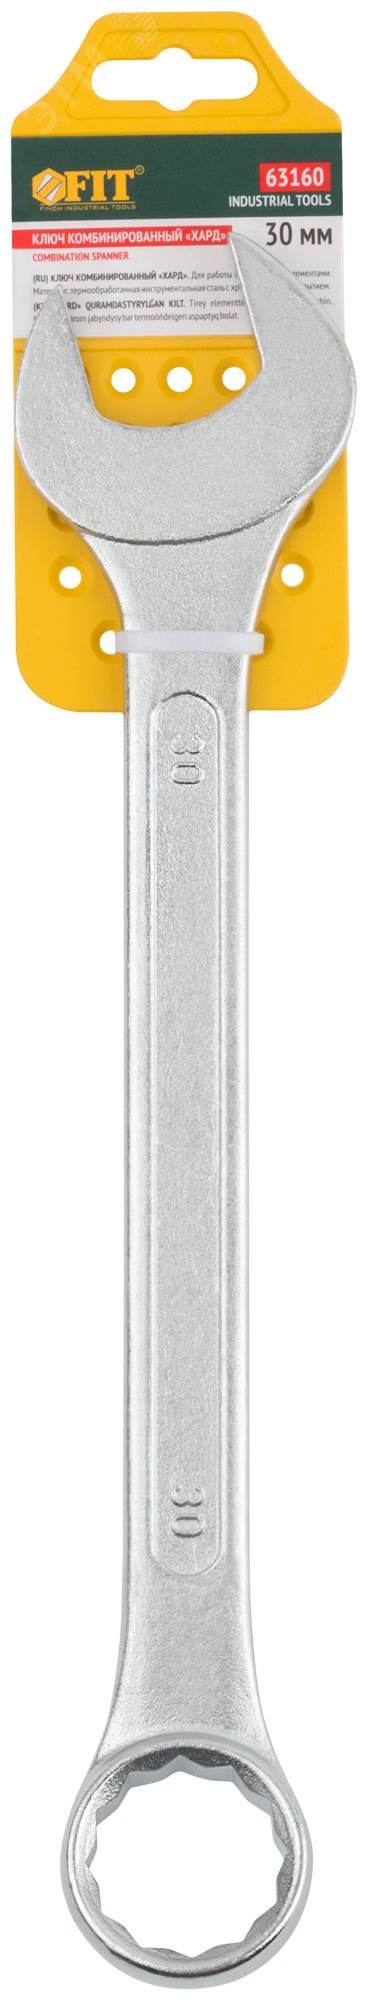 Ключ комбинированный ''Хард'', хромированное покрытие 30 мм 63160 FIT - превью 3